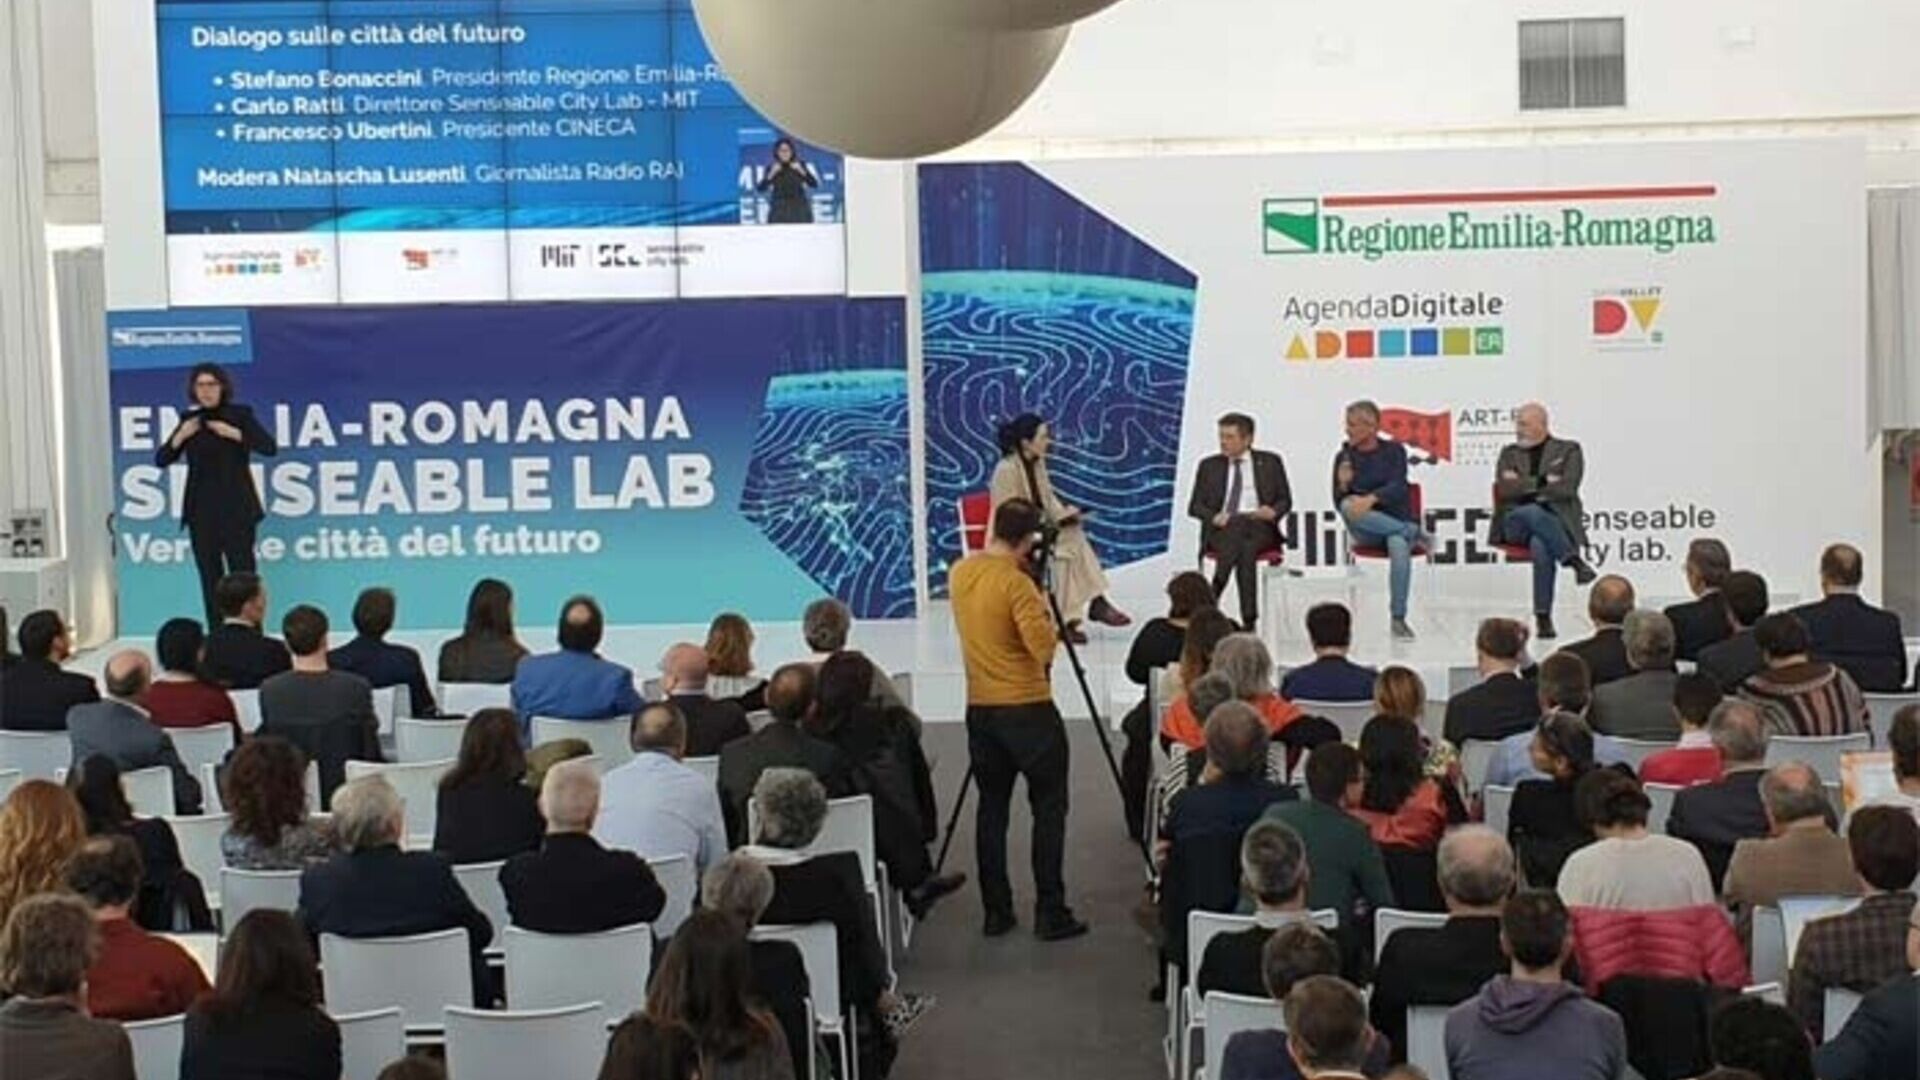 Ινστιτούτο Τεχνολογίας της Μασαχουσέτης: το MIT Senseable City Lab θα φτάσει στο Bologna Tecnopolo για να φανταστεί τις πόλεις του μέλλοντος χάρη στη συνεργασία με την περιοχή Emilia-Romagna